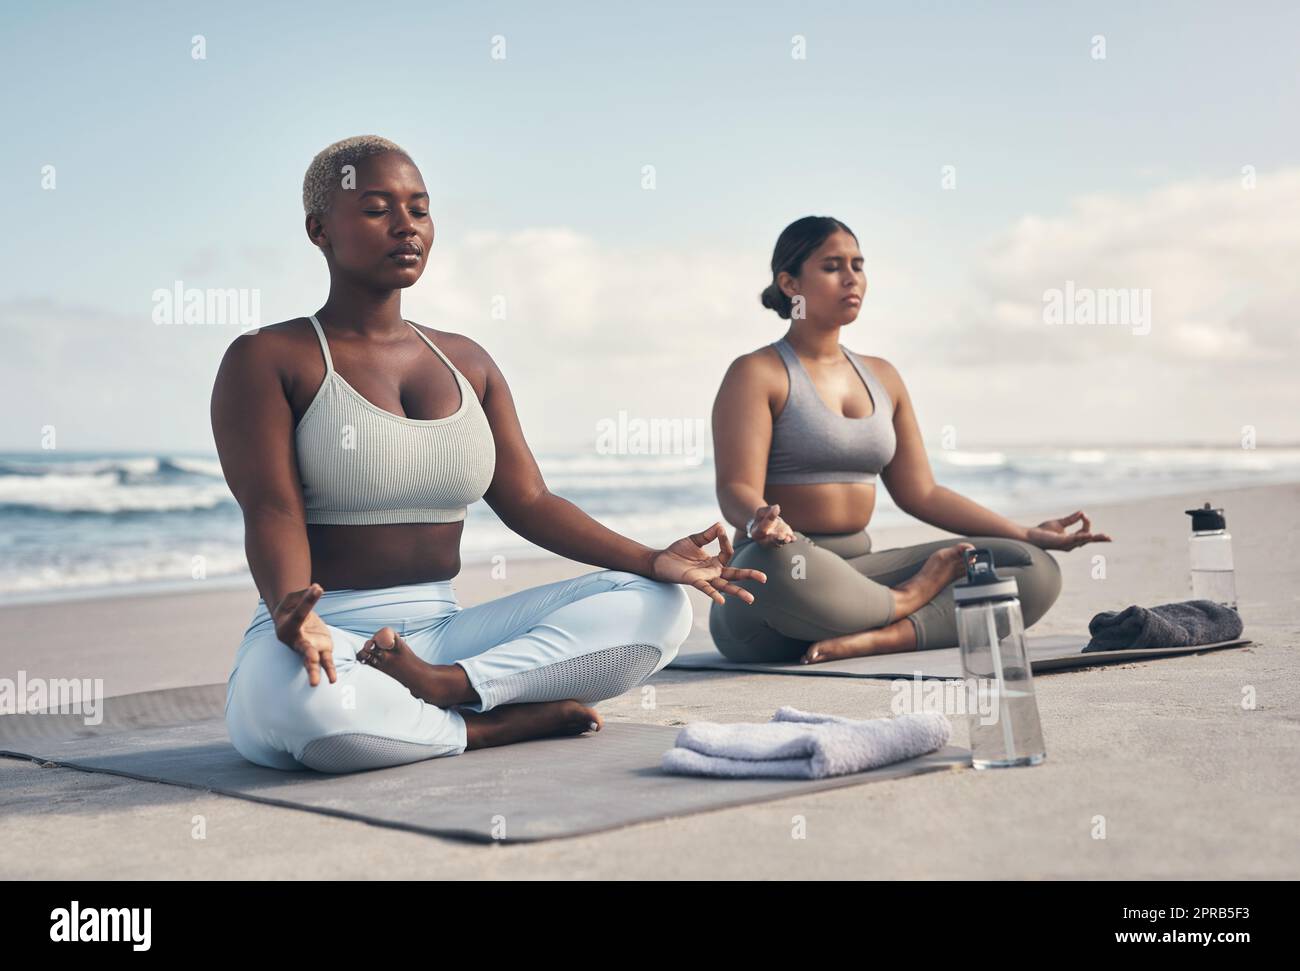 Je me sens en paix quand je suis autour de vous. Deux jeunes femmes méditant pendant leur routine de yoga sur la plage. Banque D'Images